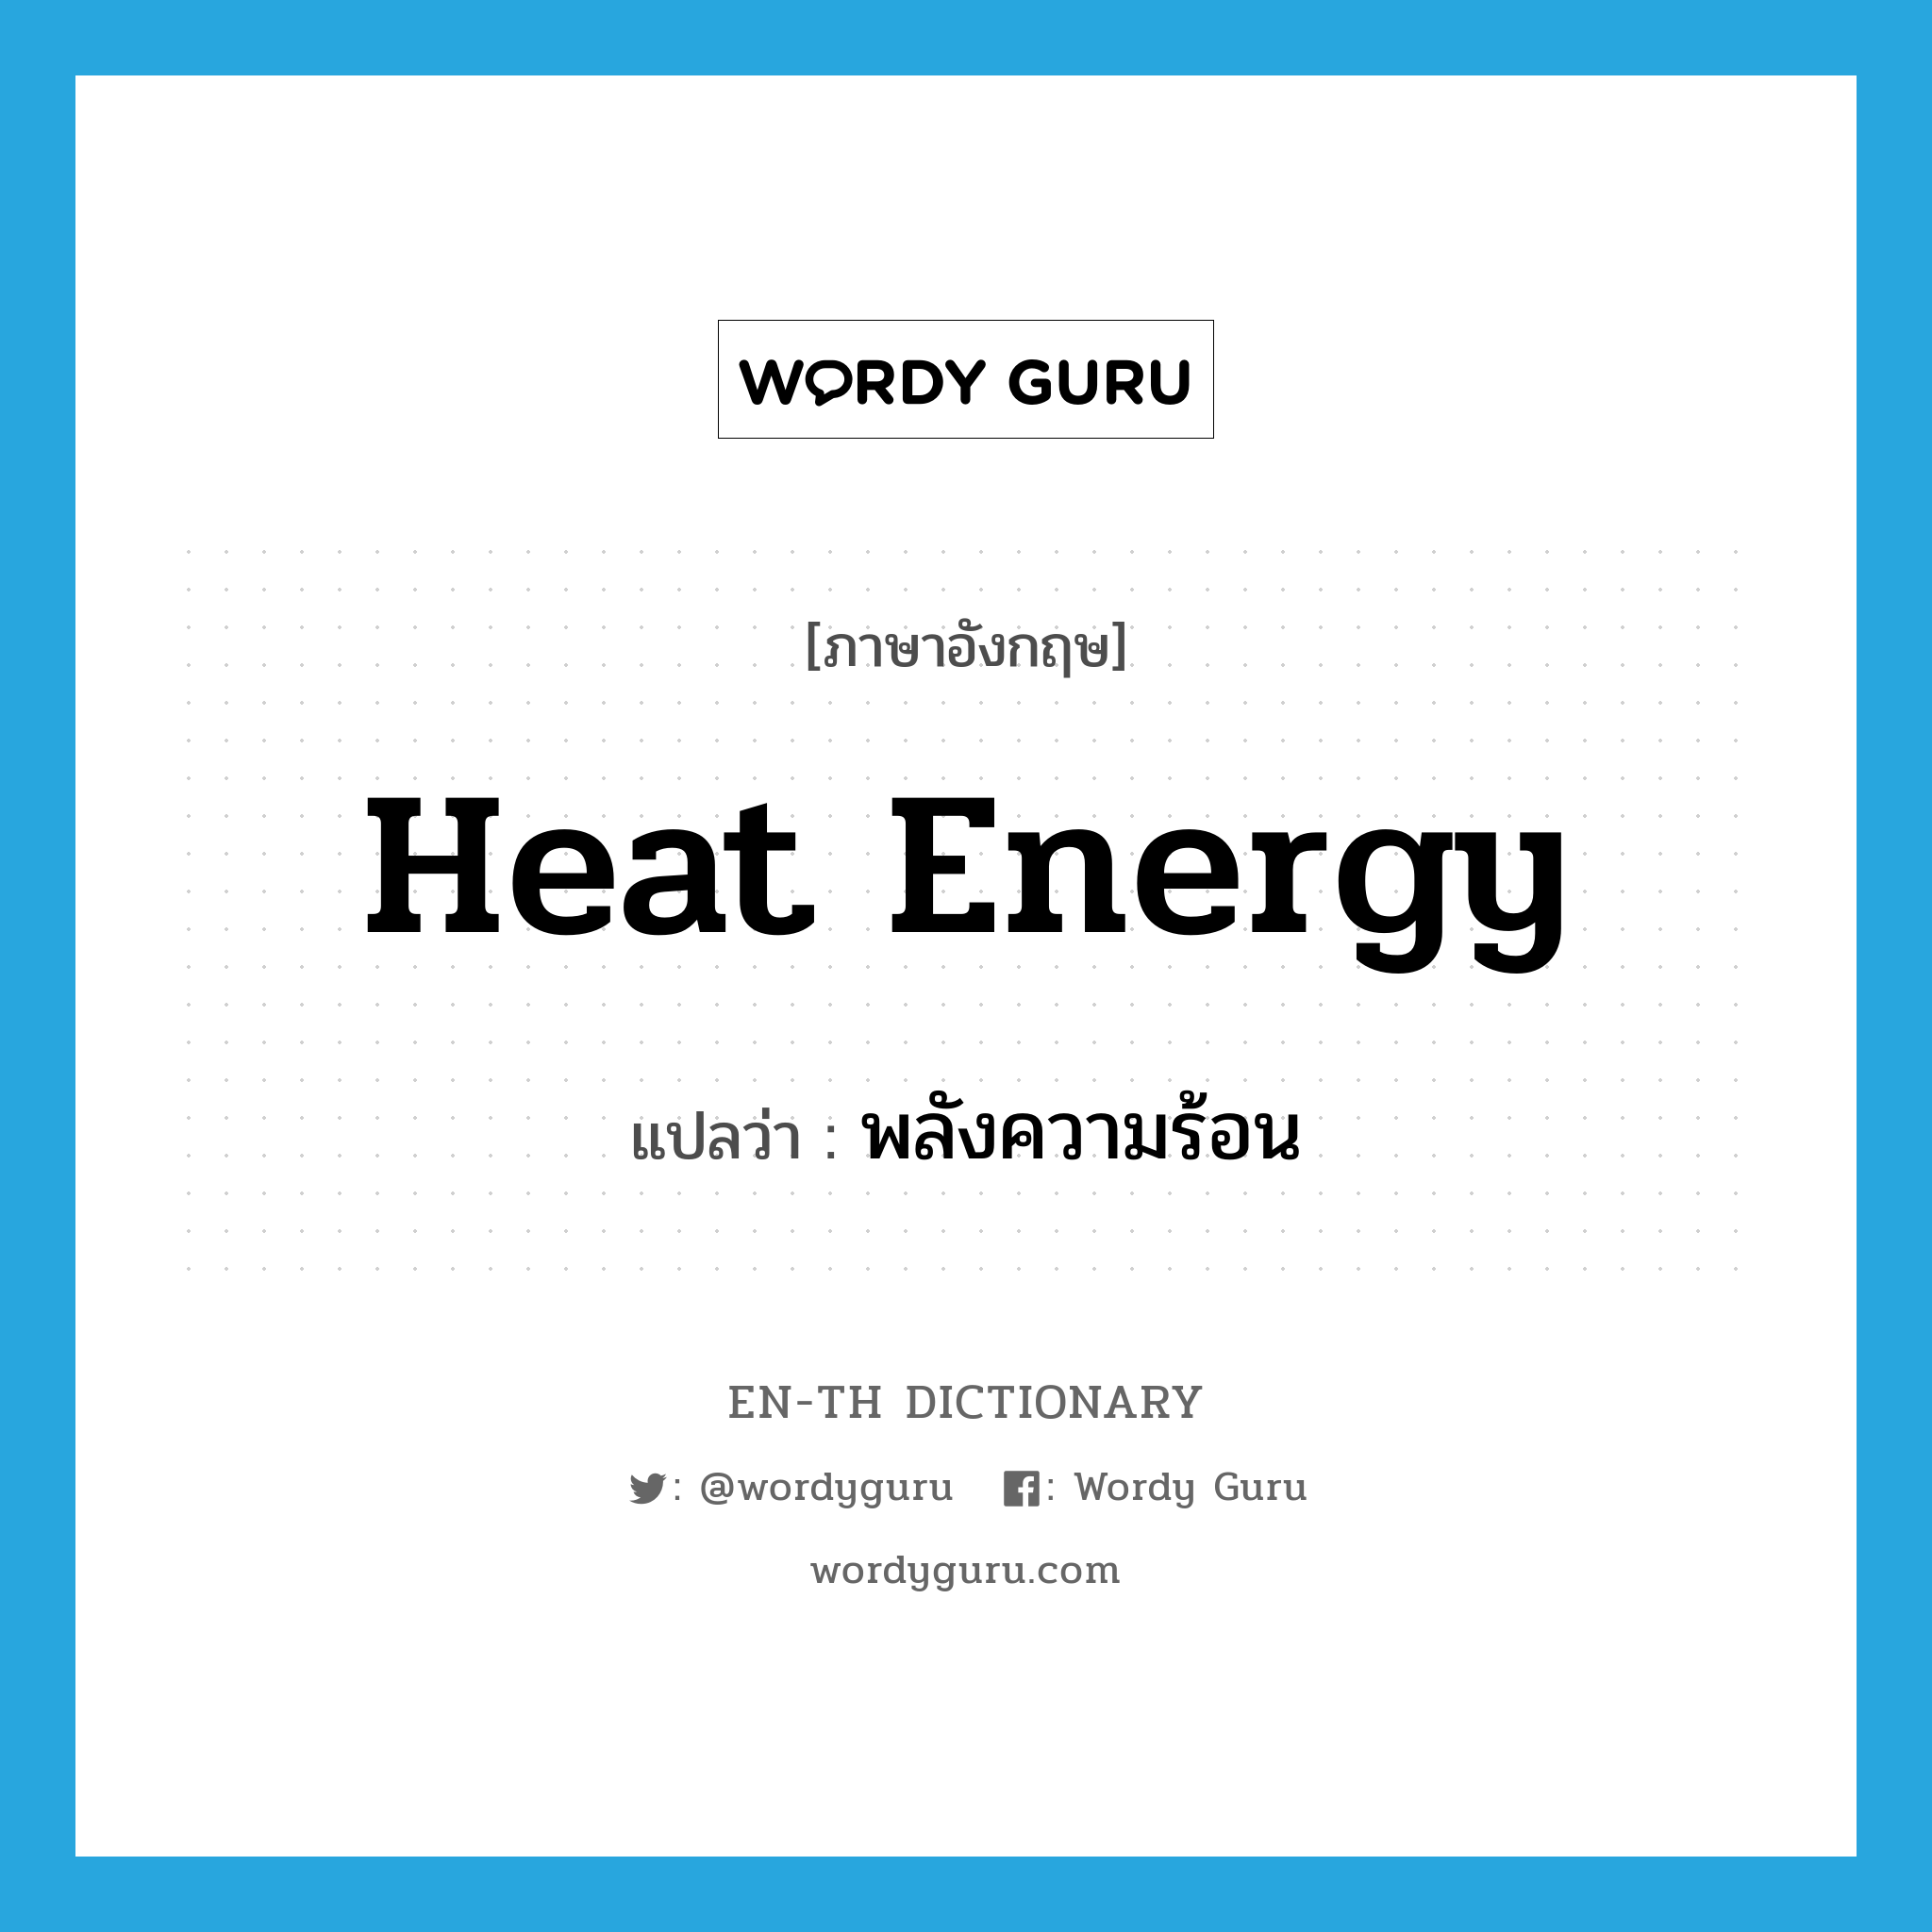 heat energy แปลว่า?, คำศัพท์ภาษาอังกฤษ heat energy แปลว่า พลังความร้อน ประเภท N หมวด N